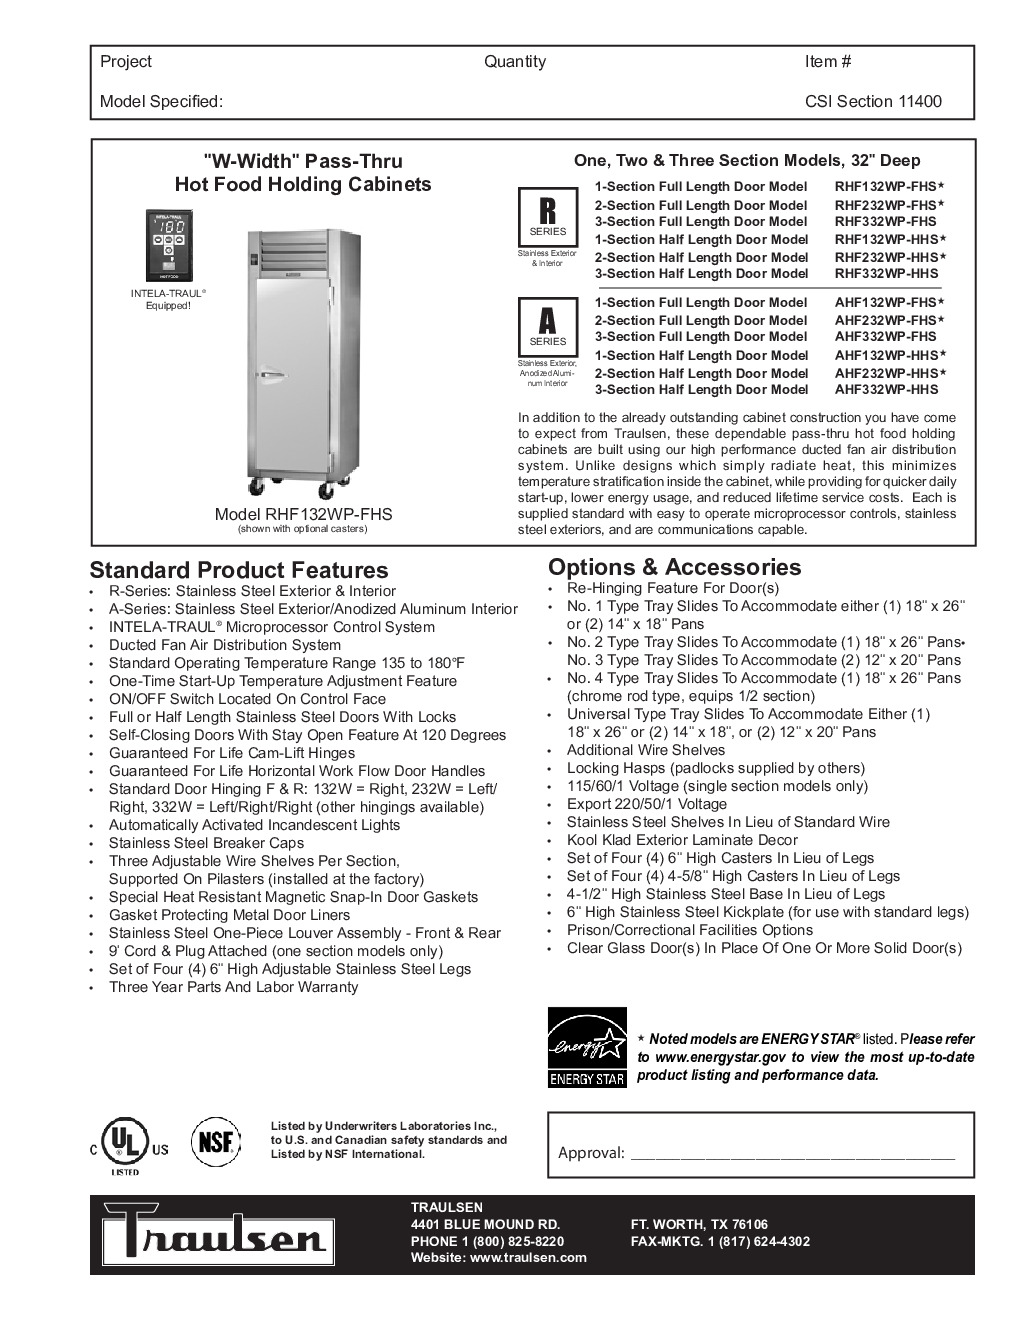 Traulsen AHF232WP-HHG Pass-Thru Heated Cabinet